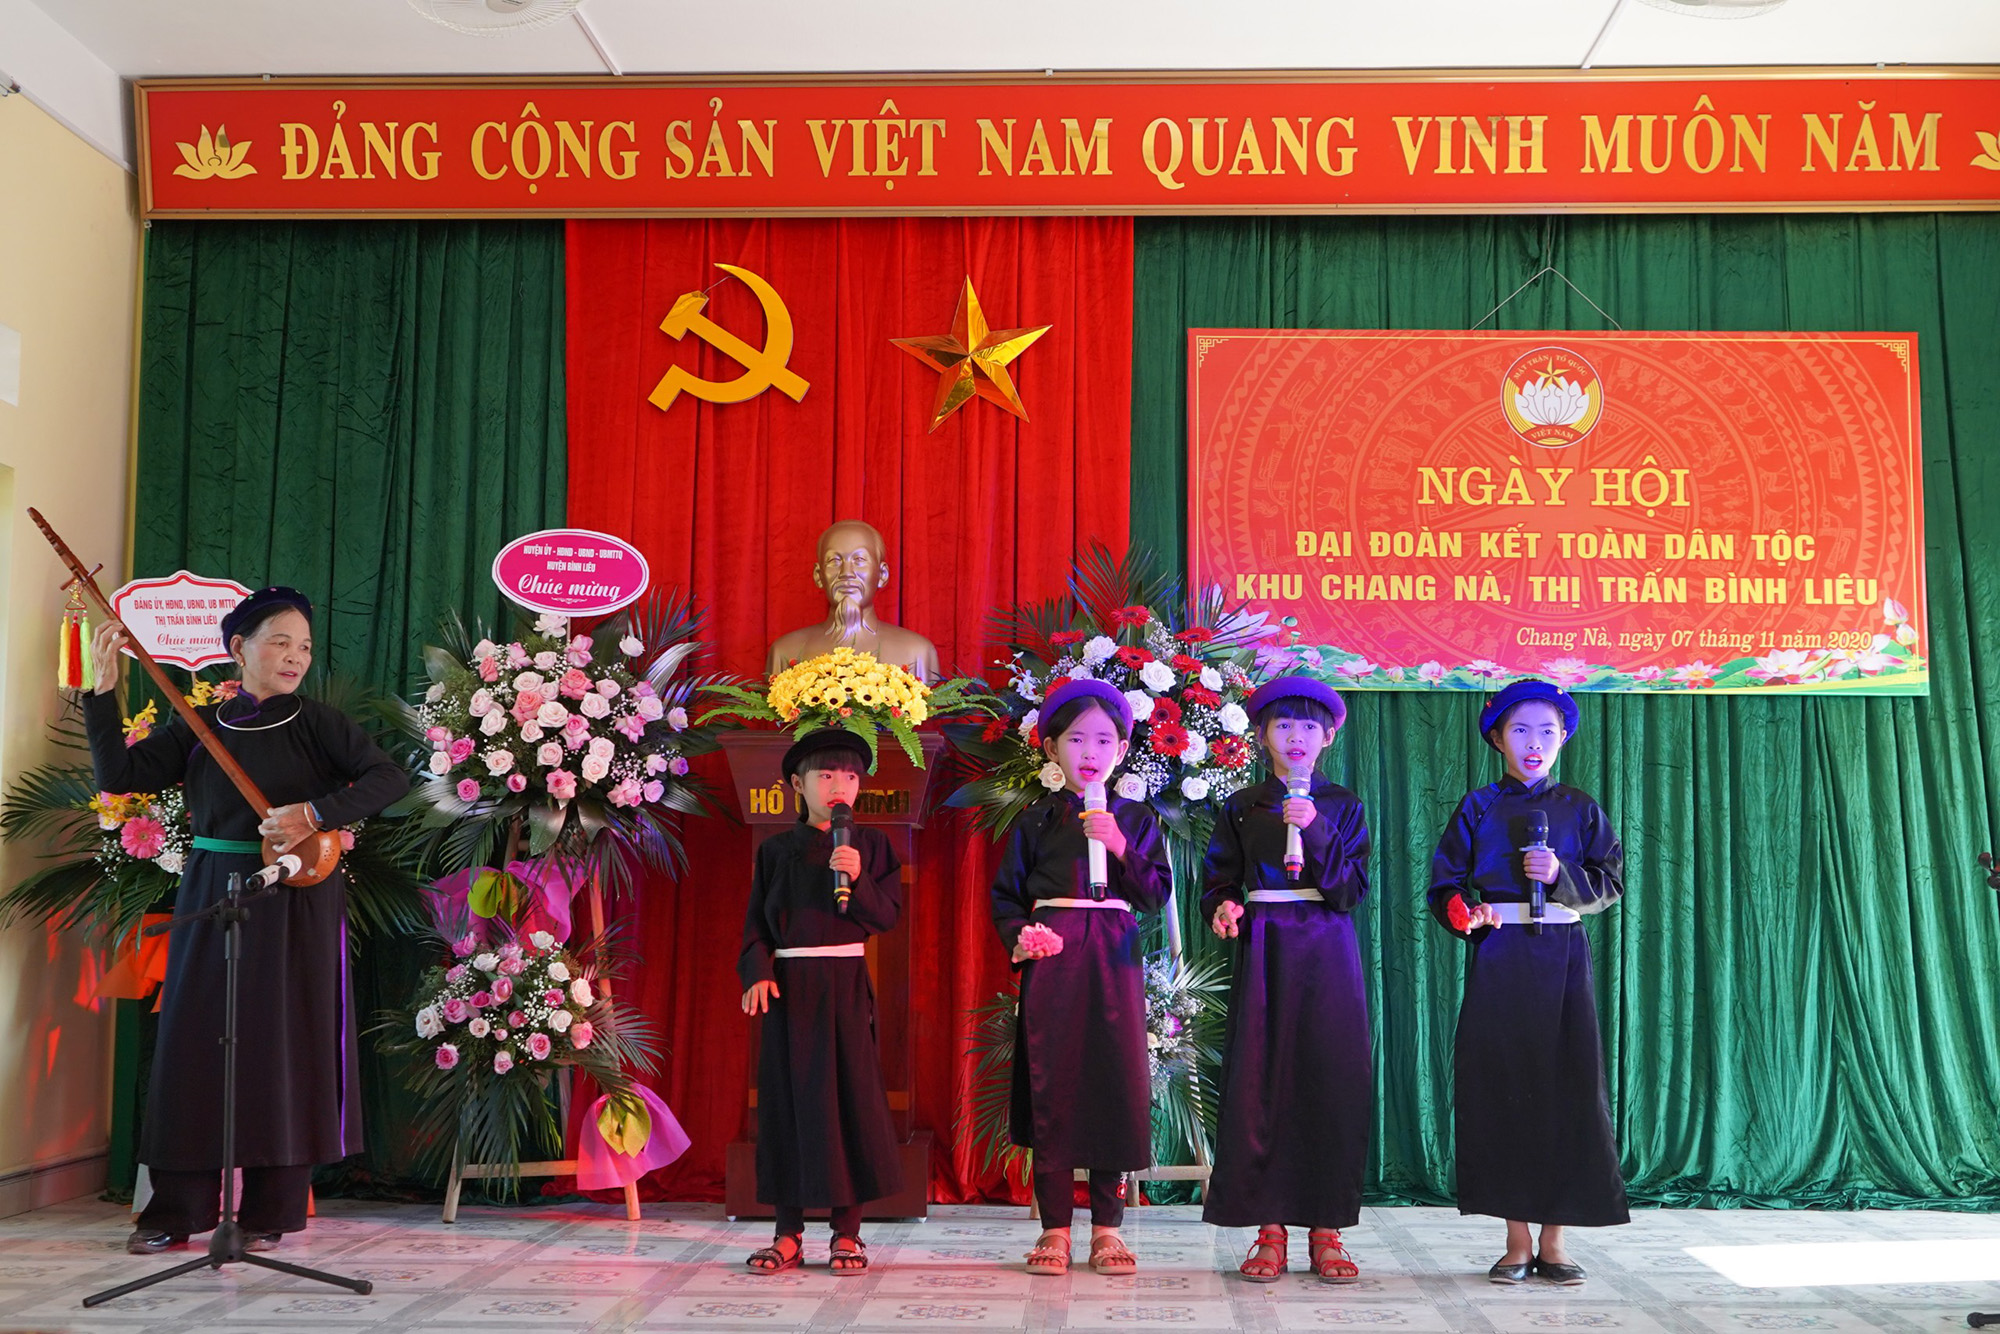 Tiết mục văn nghệ do nhân dân khu Chang Nà biểu diễn chào mừng ngày hội.